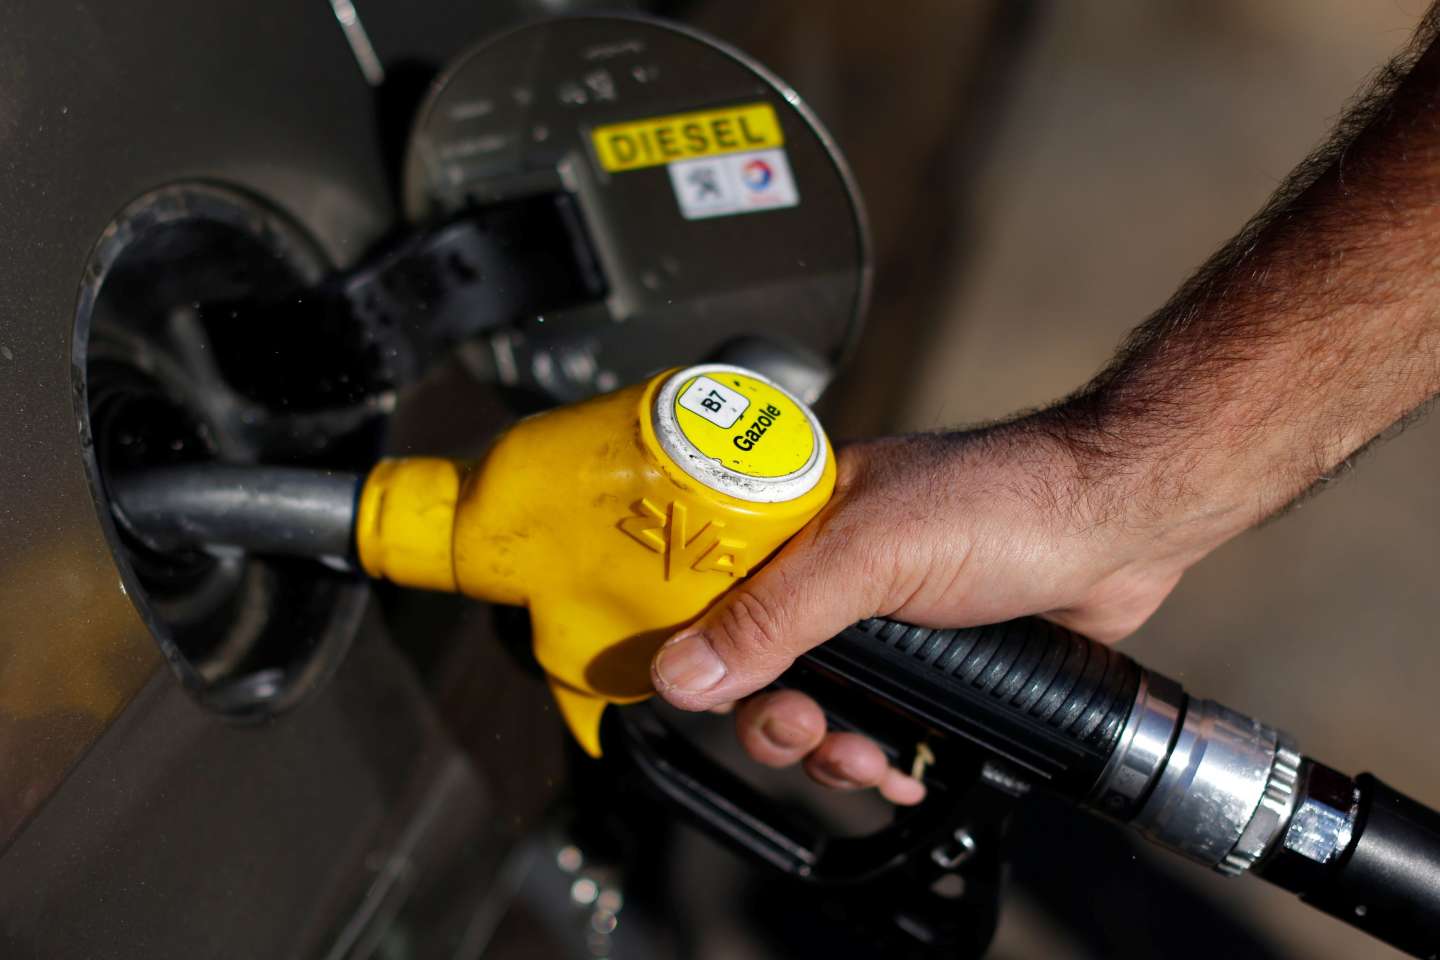 Les prix de l’essence en France sont repassés au-dessus de la barre des deux euros la semaine dernière